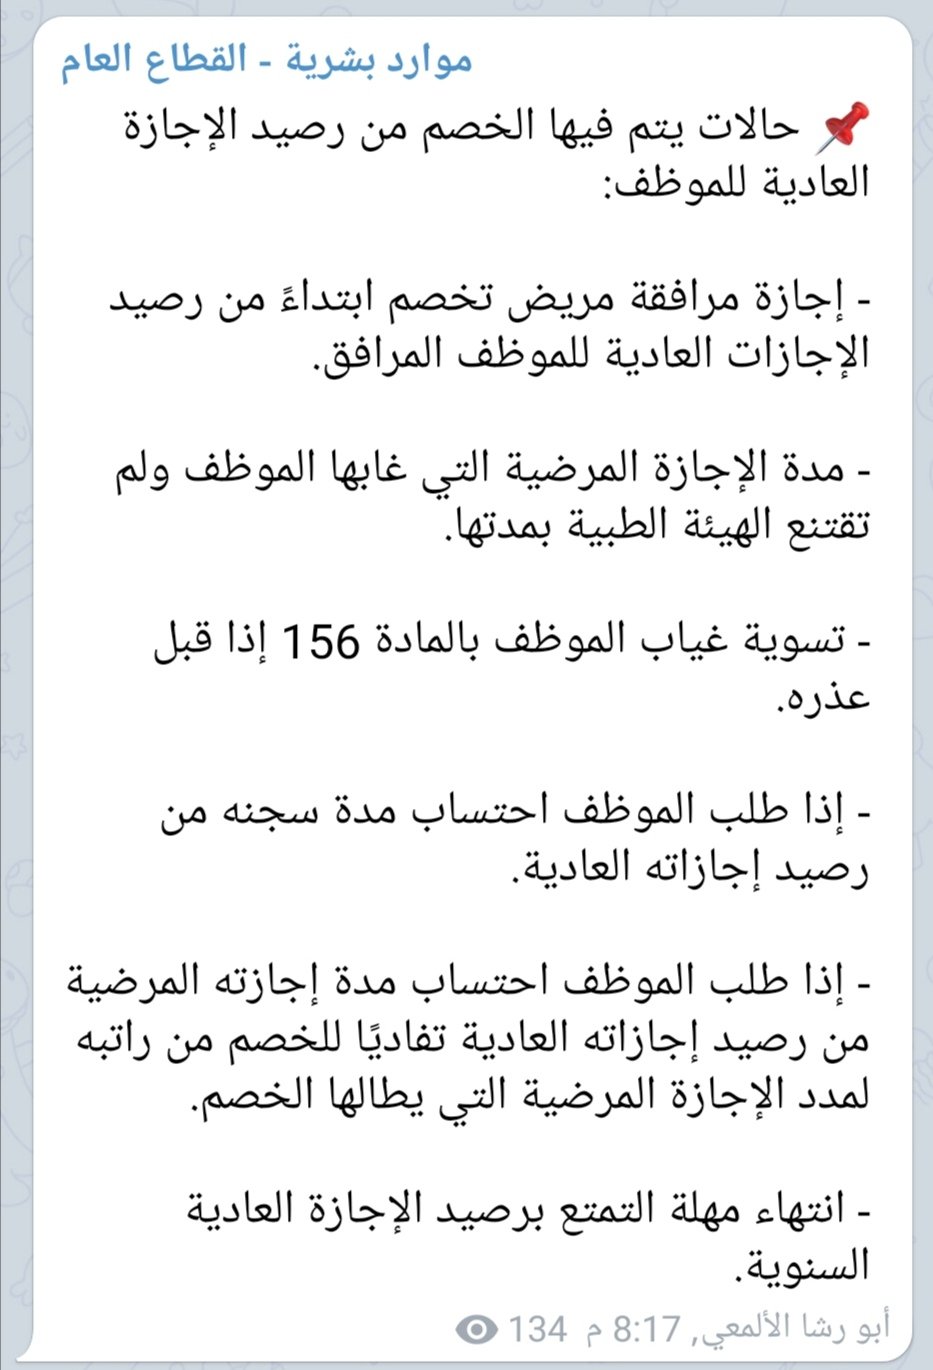 محمد أحمد الألمعي Sur Twitter حالات يتم فيها الخصم من رصيد الإجازة العادية للموظف